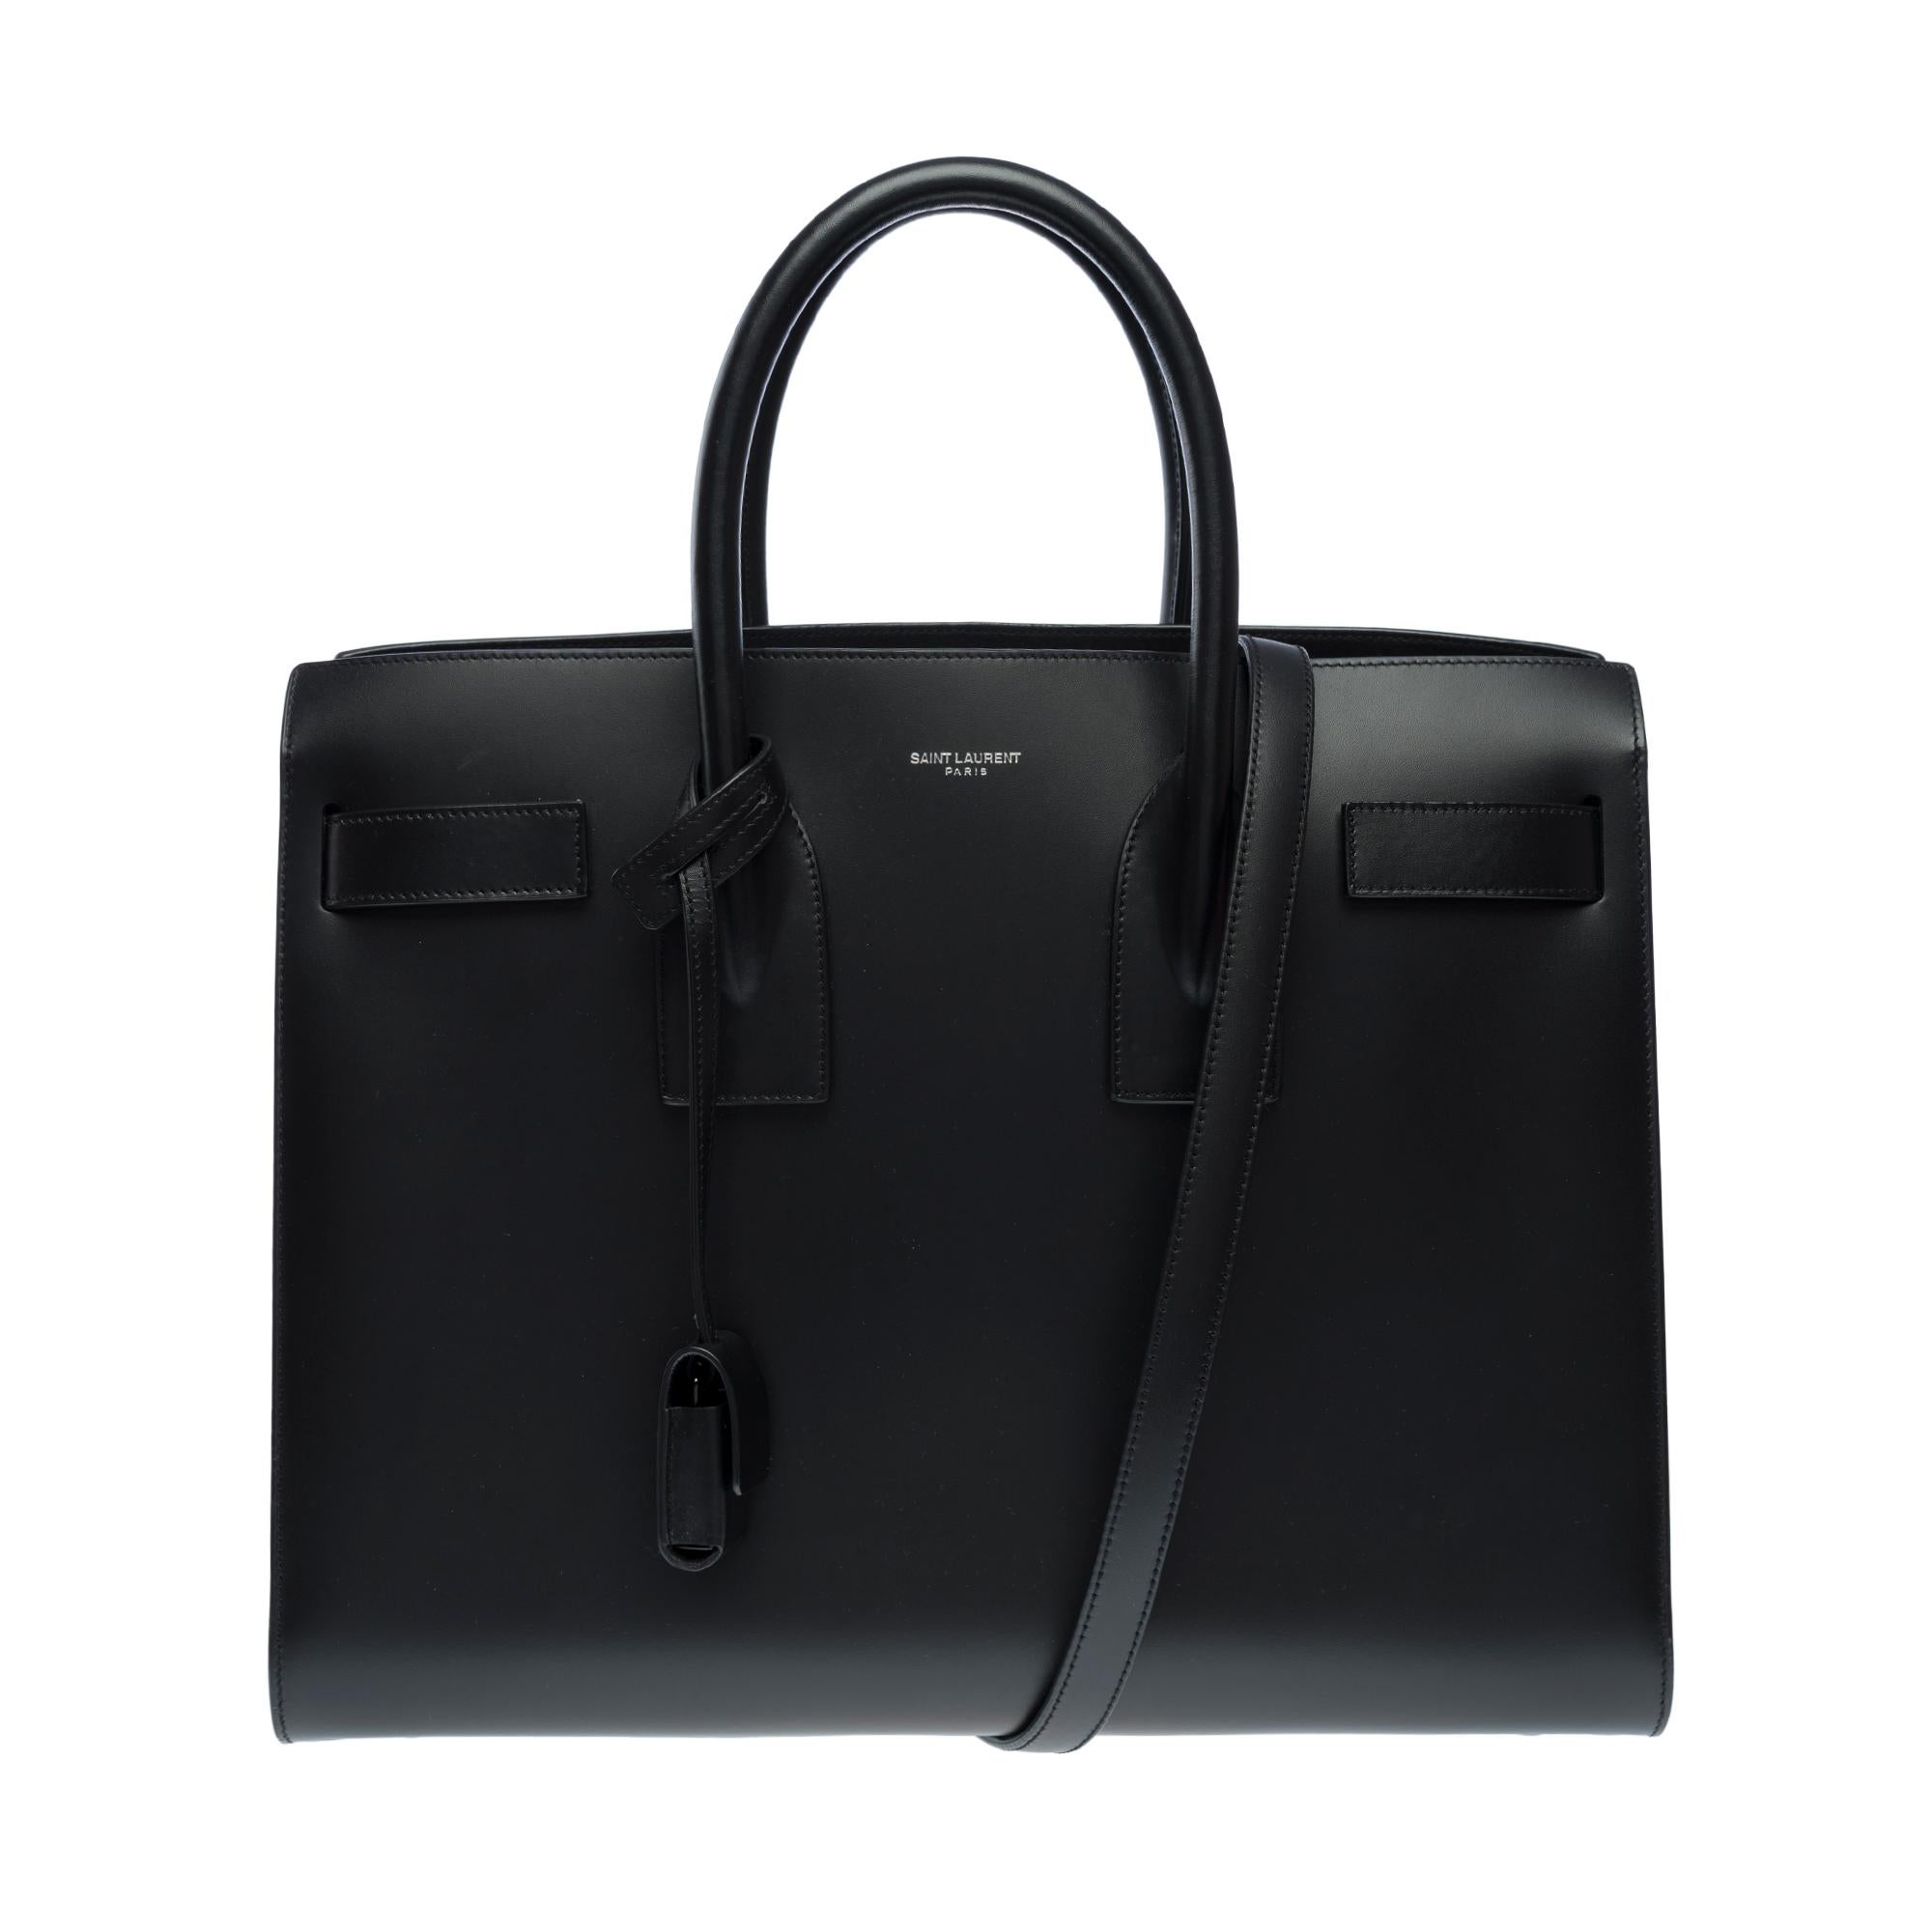 Saint Laurent Sac de Jour Kleine Handtasche in schwarzer Box aus Kalbsleder in Schwarz für Damen oder Herren im Angebot